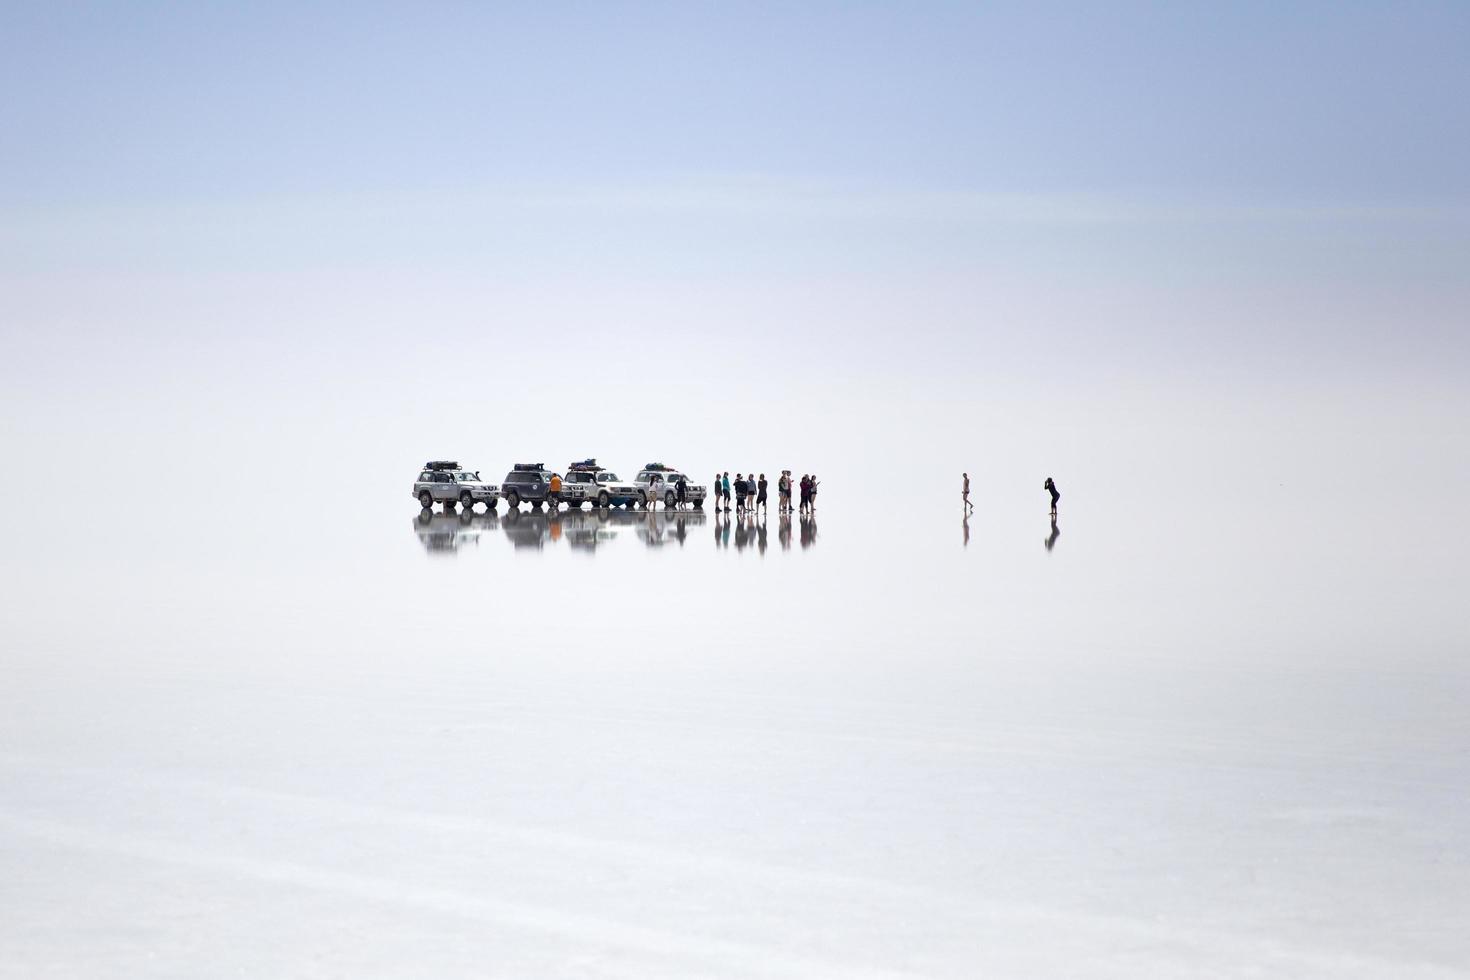 salar de uyuni, bolivia, 13 gennaio 2018 - spedizione al salar de uyuni in bolivia. è la più grande distesa di sale del mondo. foto